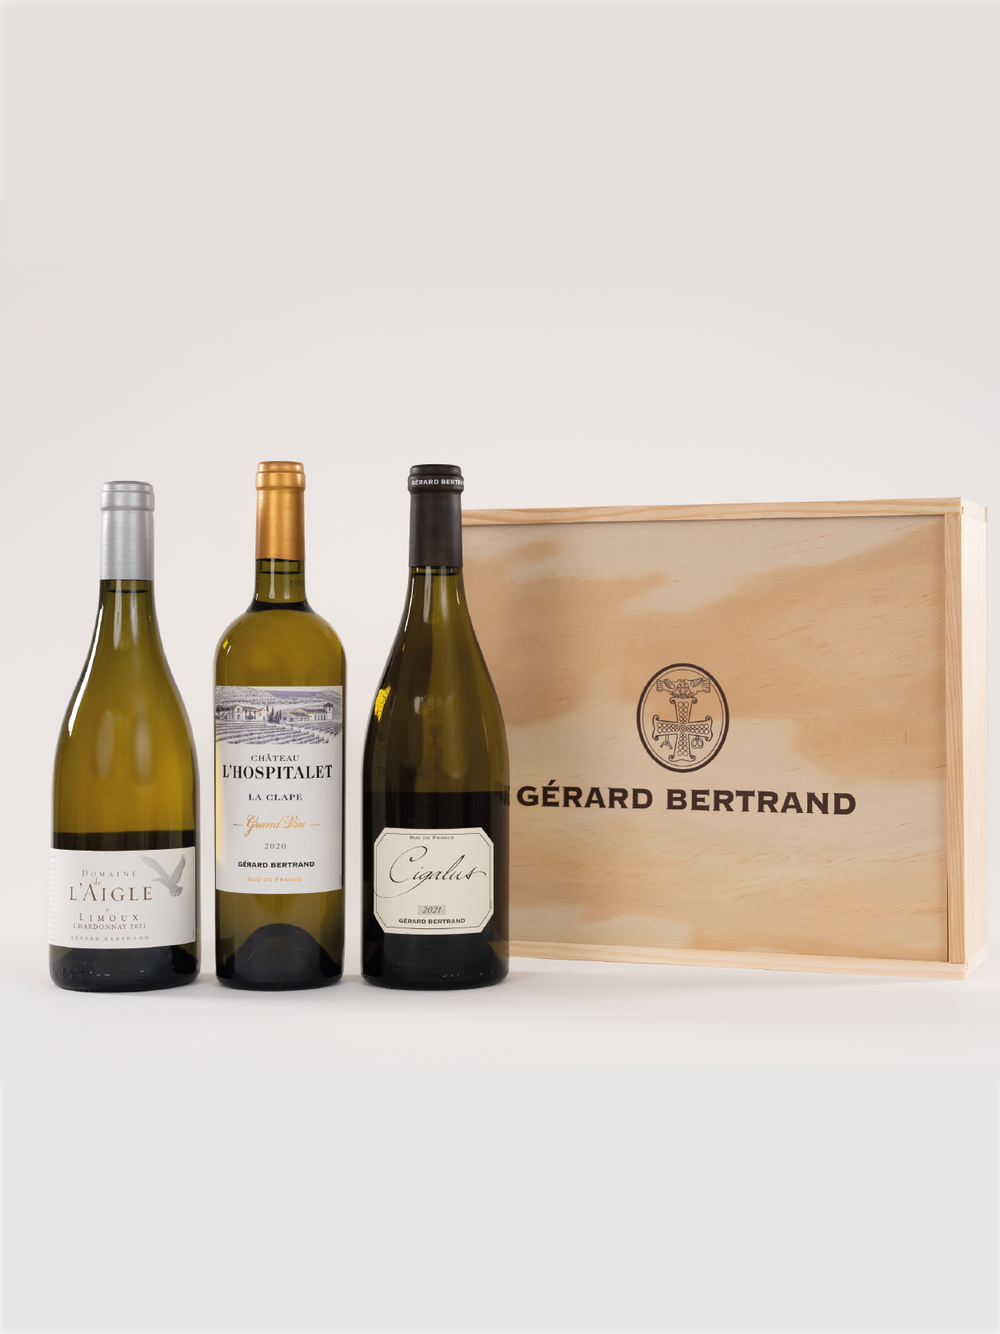 Coffret Château l'Hospitalet Meilleur Vin du Monde – Gérard Bertrand